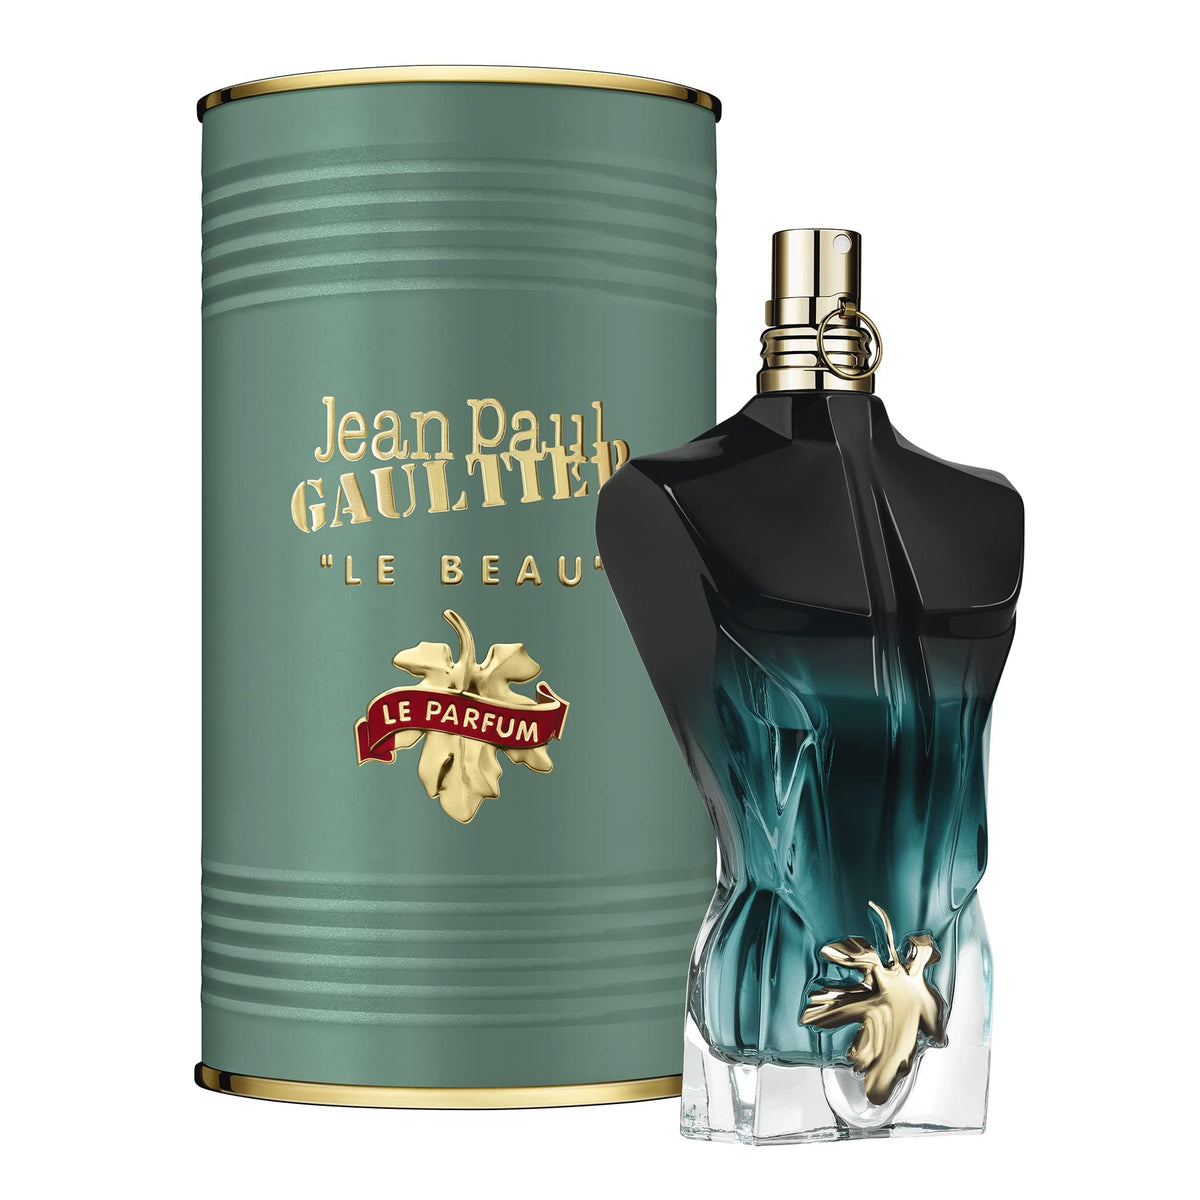 Jean Paul Gaultier Le Beau Le Parfum Intense 2.5oz for Men